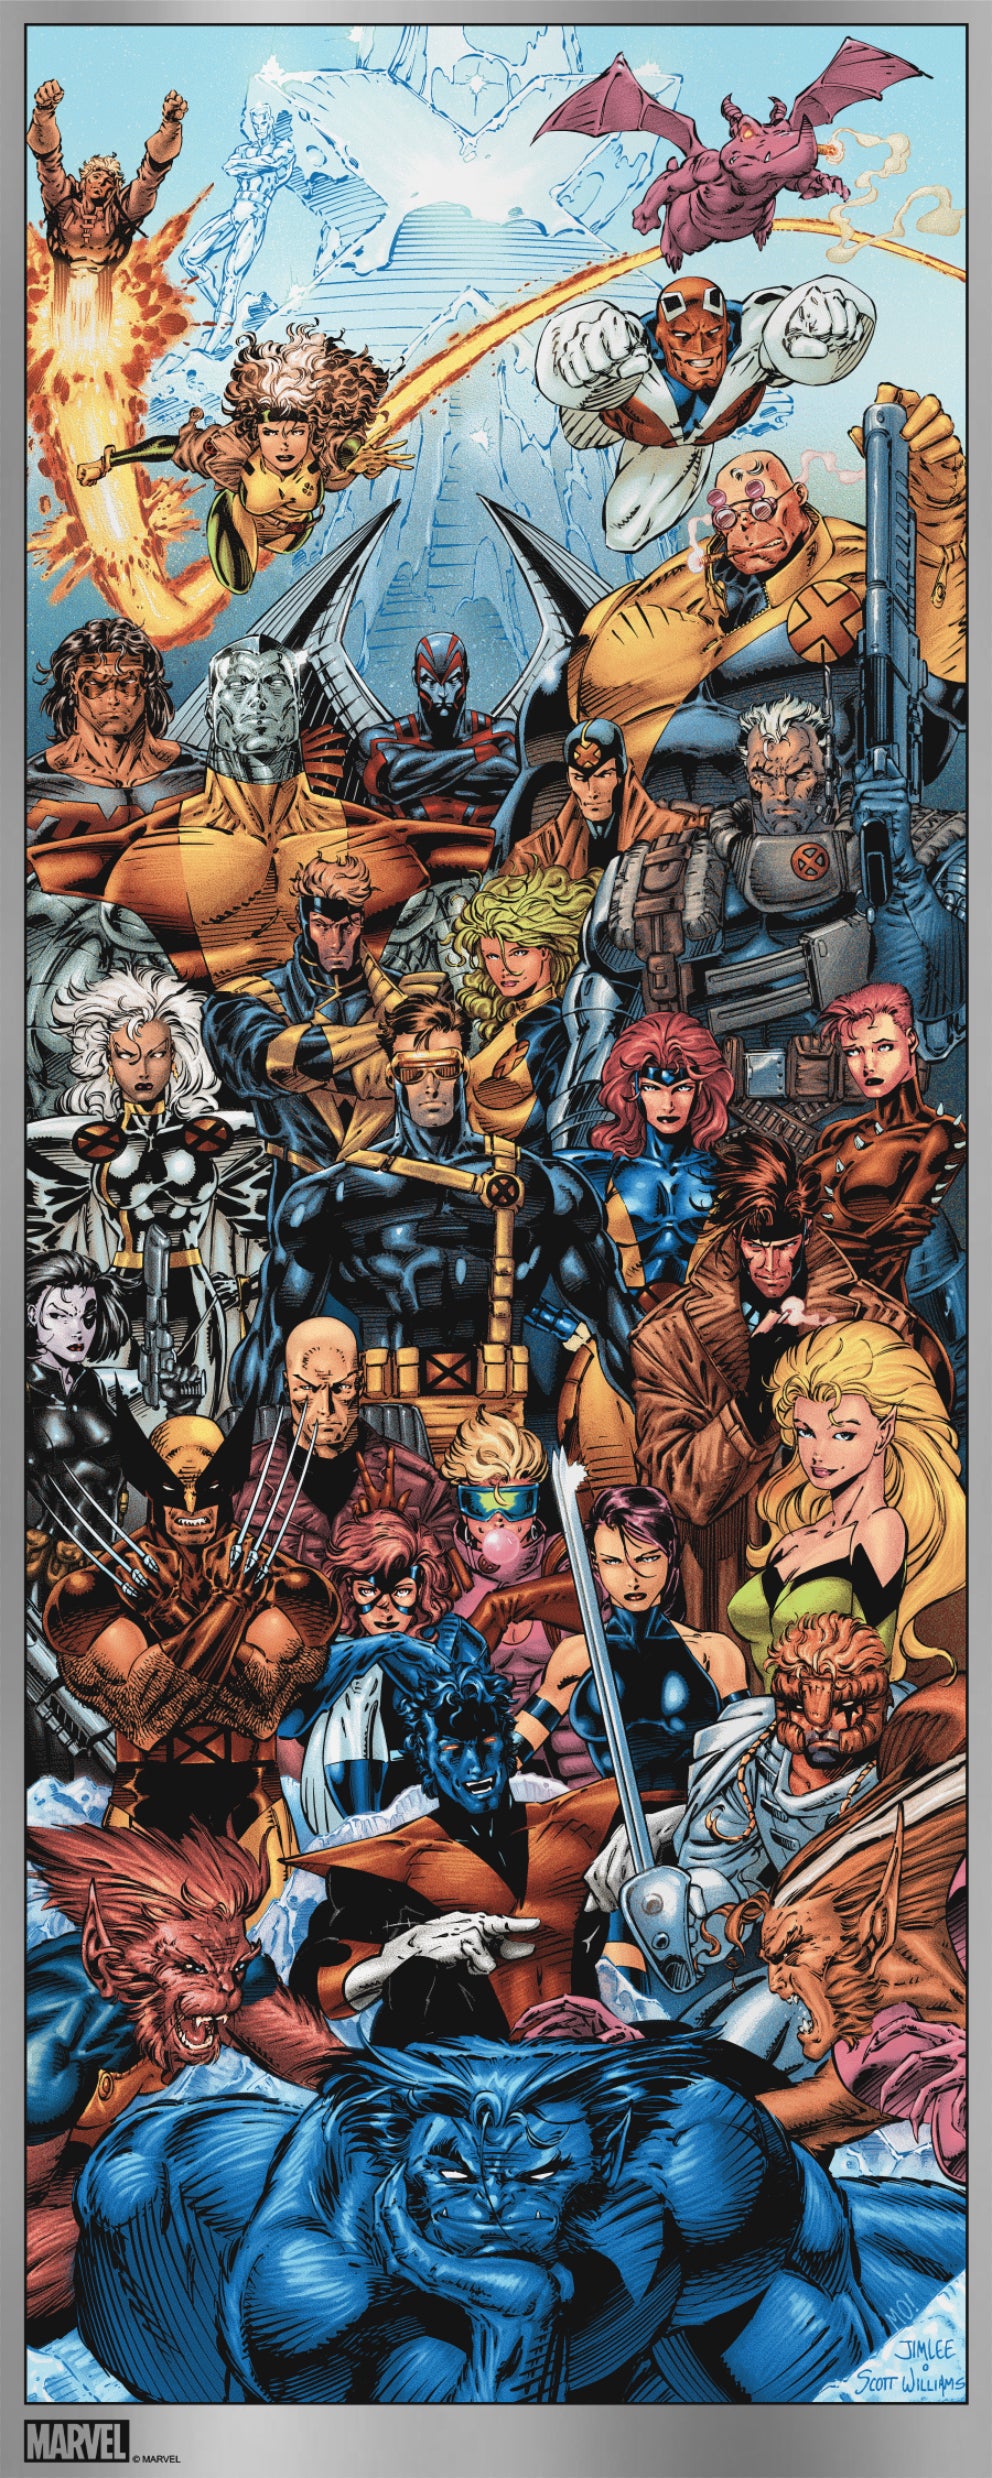 Jim Lee "X-Men" Variant FOIL